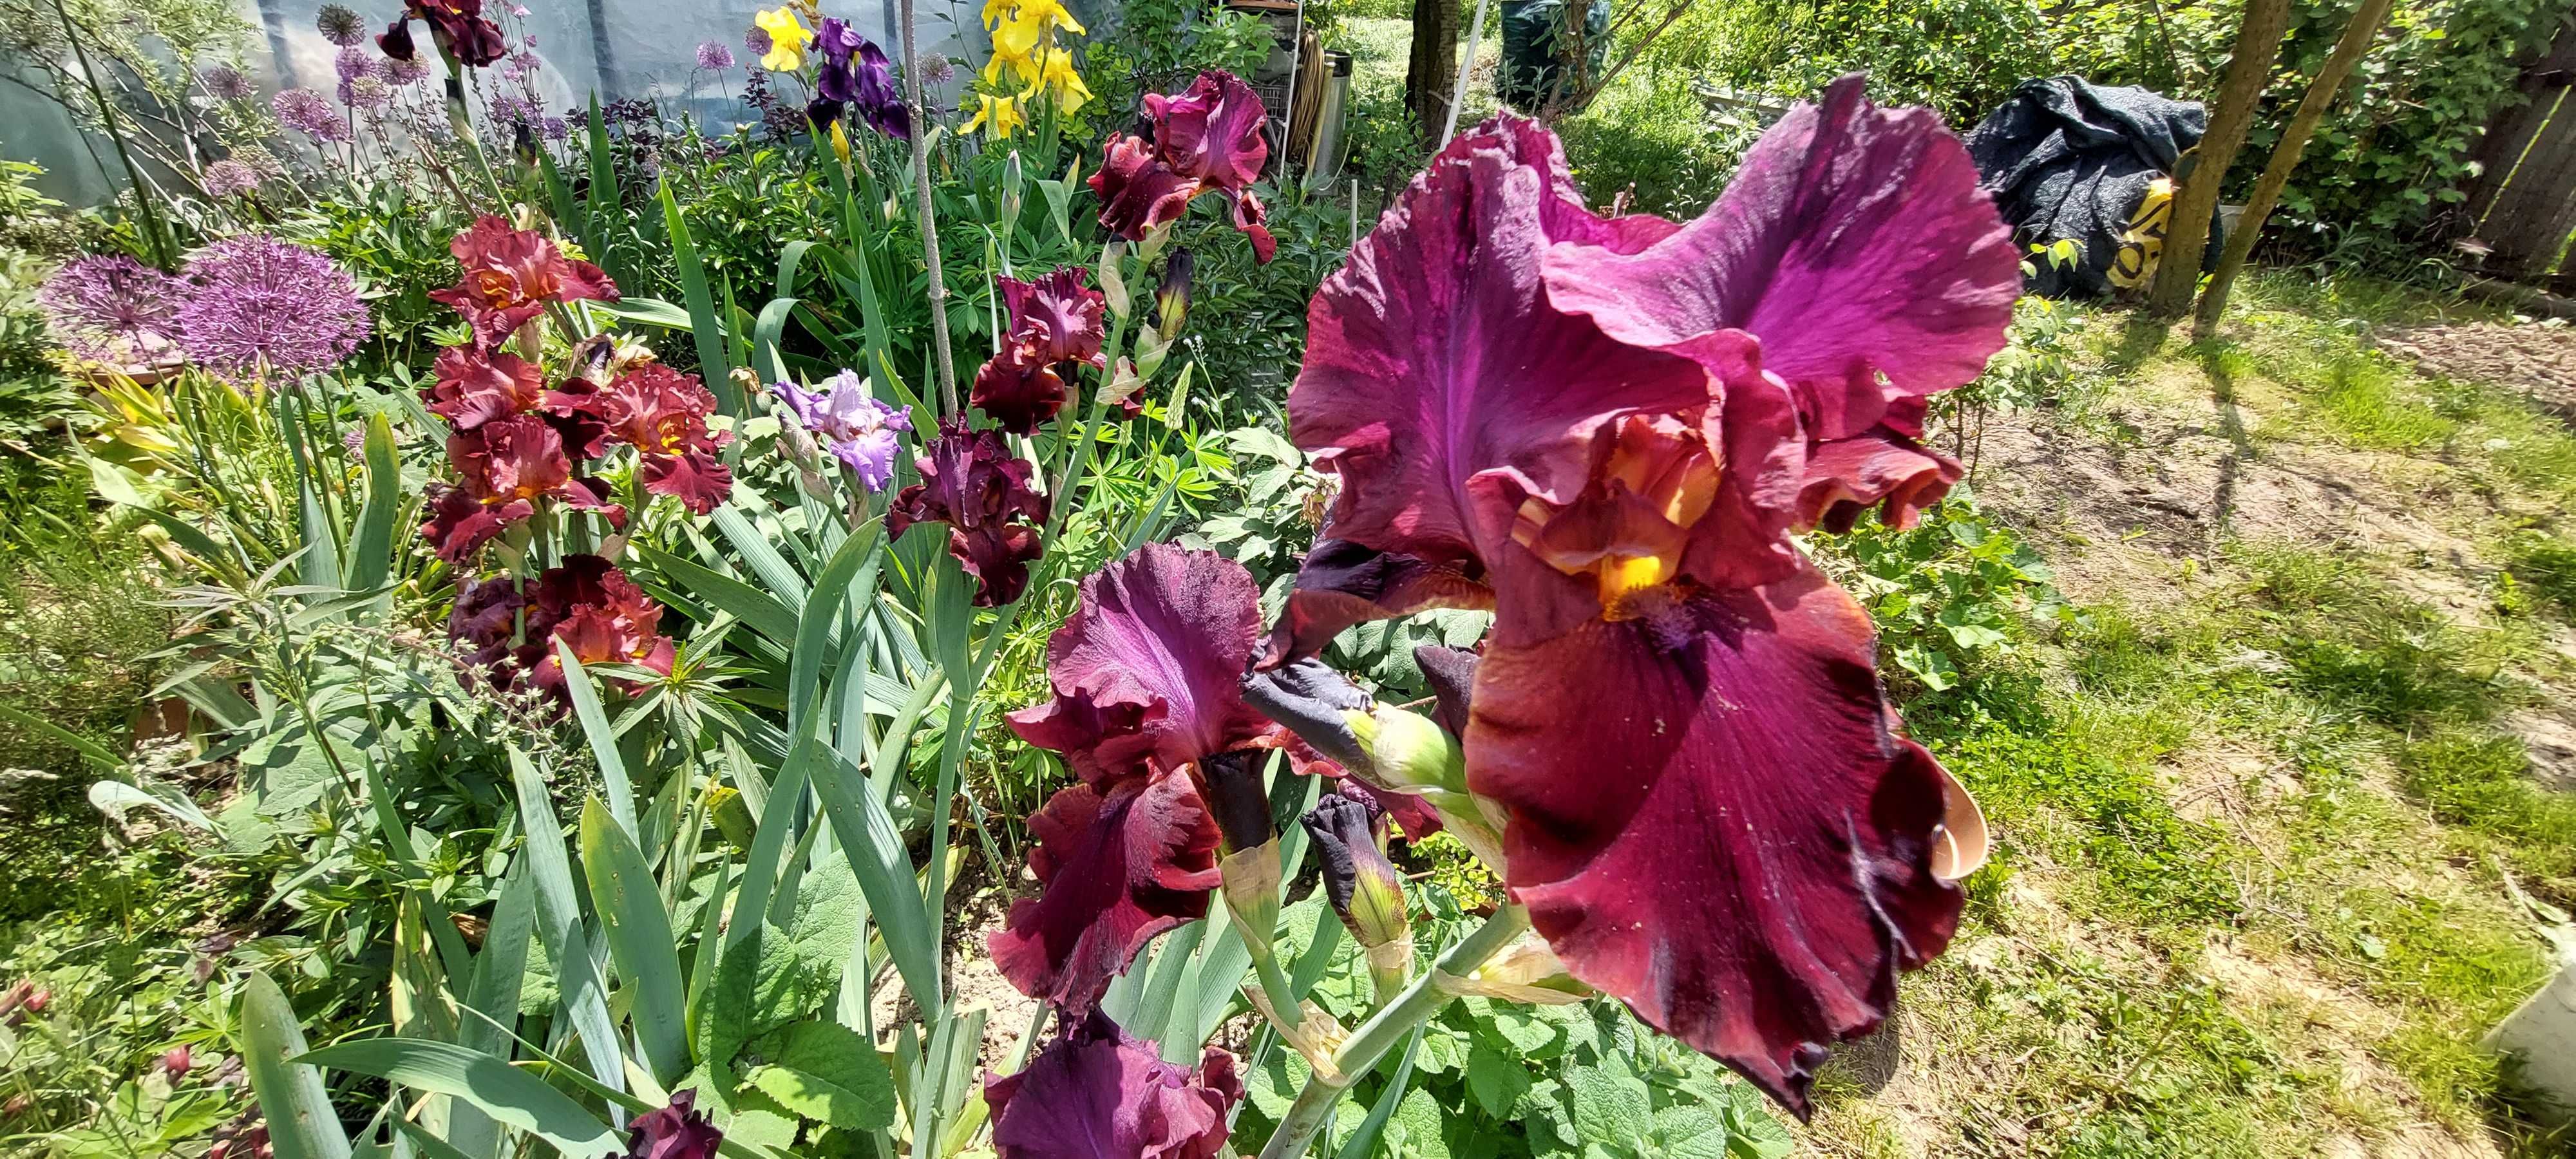 Irisi culori superbe grena rosu